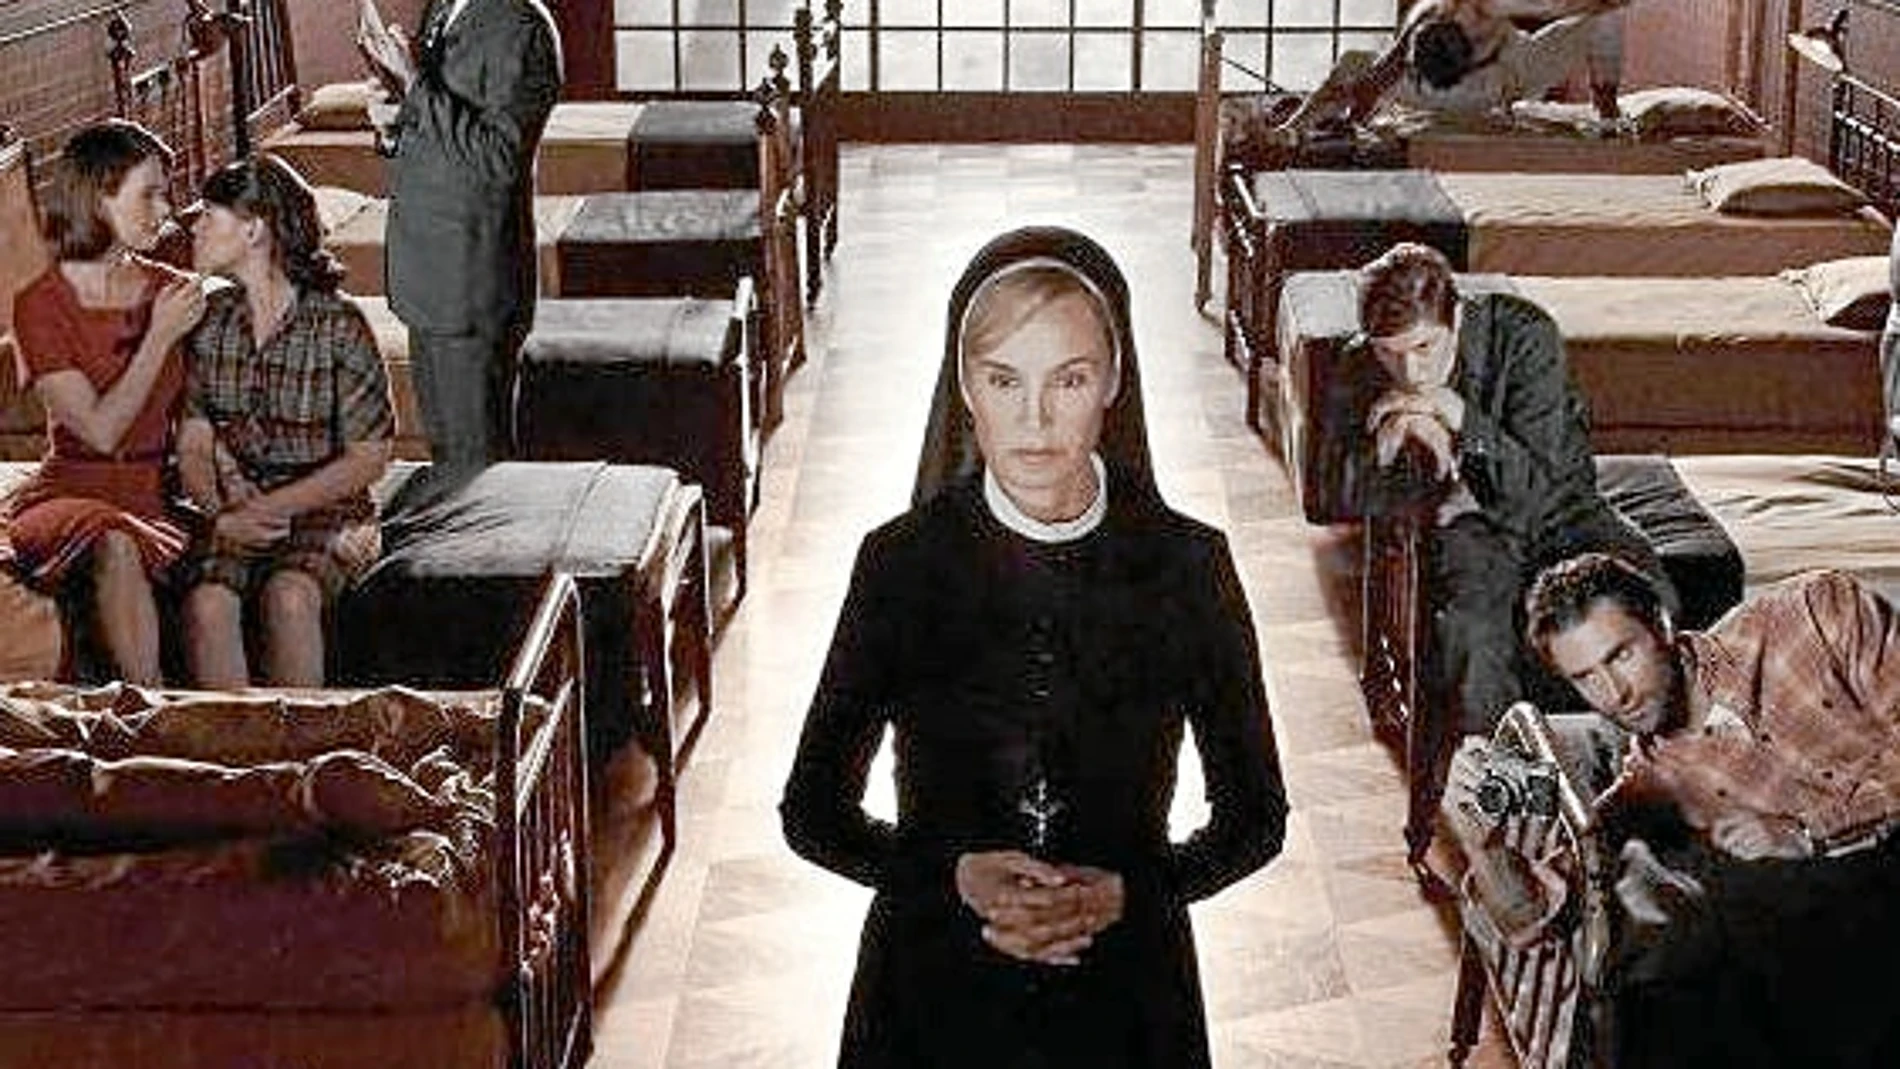 La serie está interpretada por Jessica Lange, que logró por su interpretación en la primera temporada un Globo de Oro